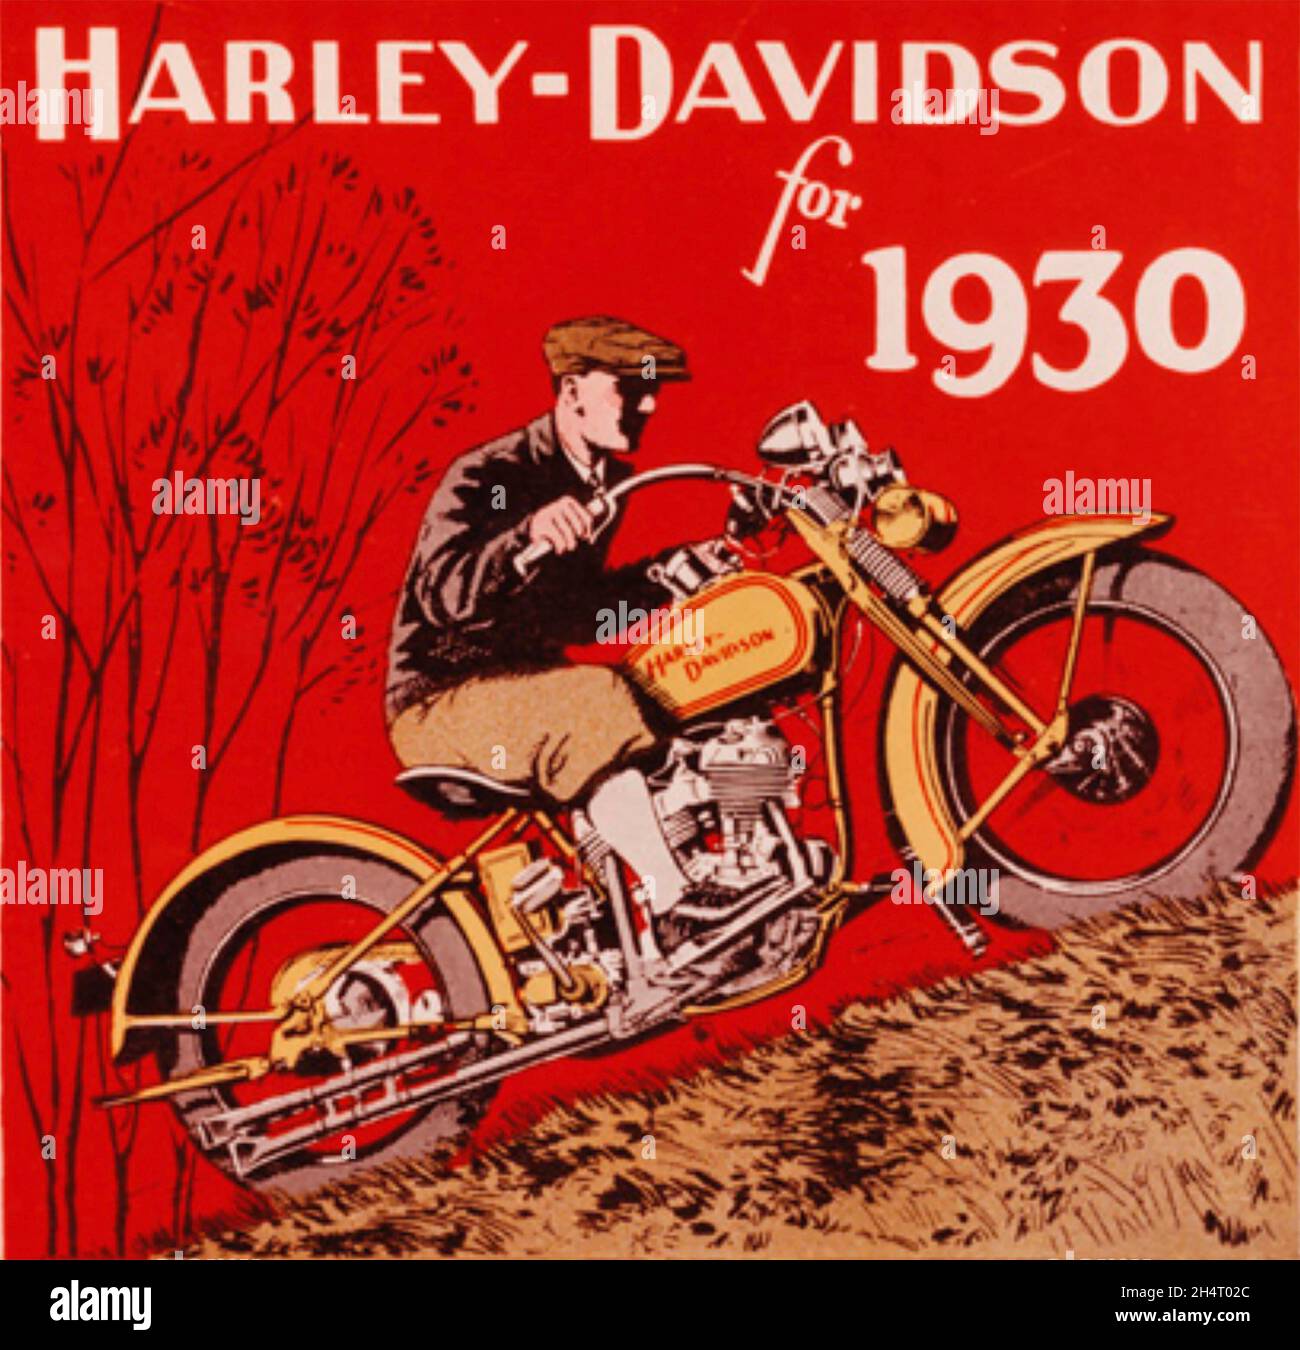 HARLEY-DAVIDSON constructeur américain de moto.Une affiche de 1930; Banque D'Images